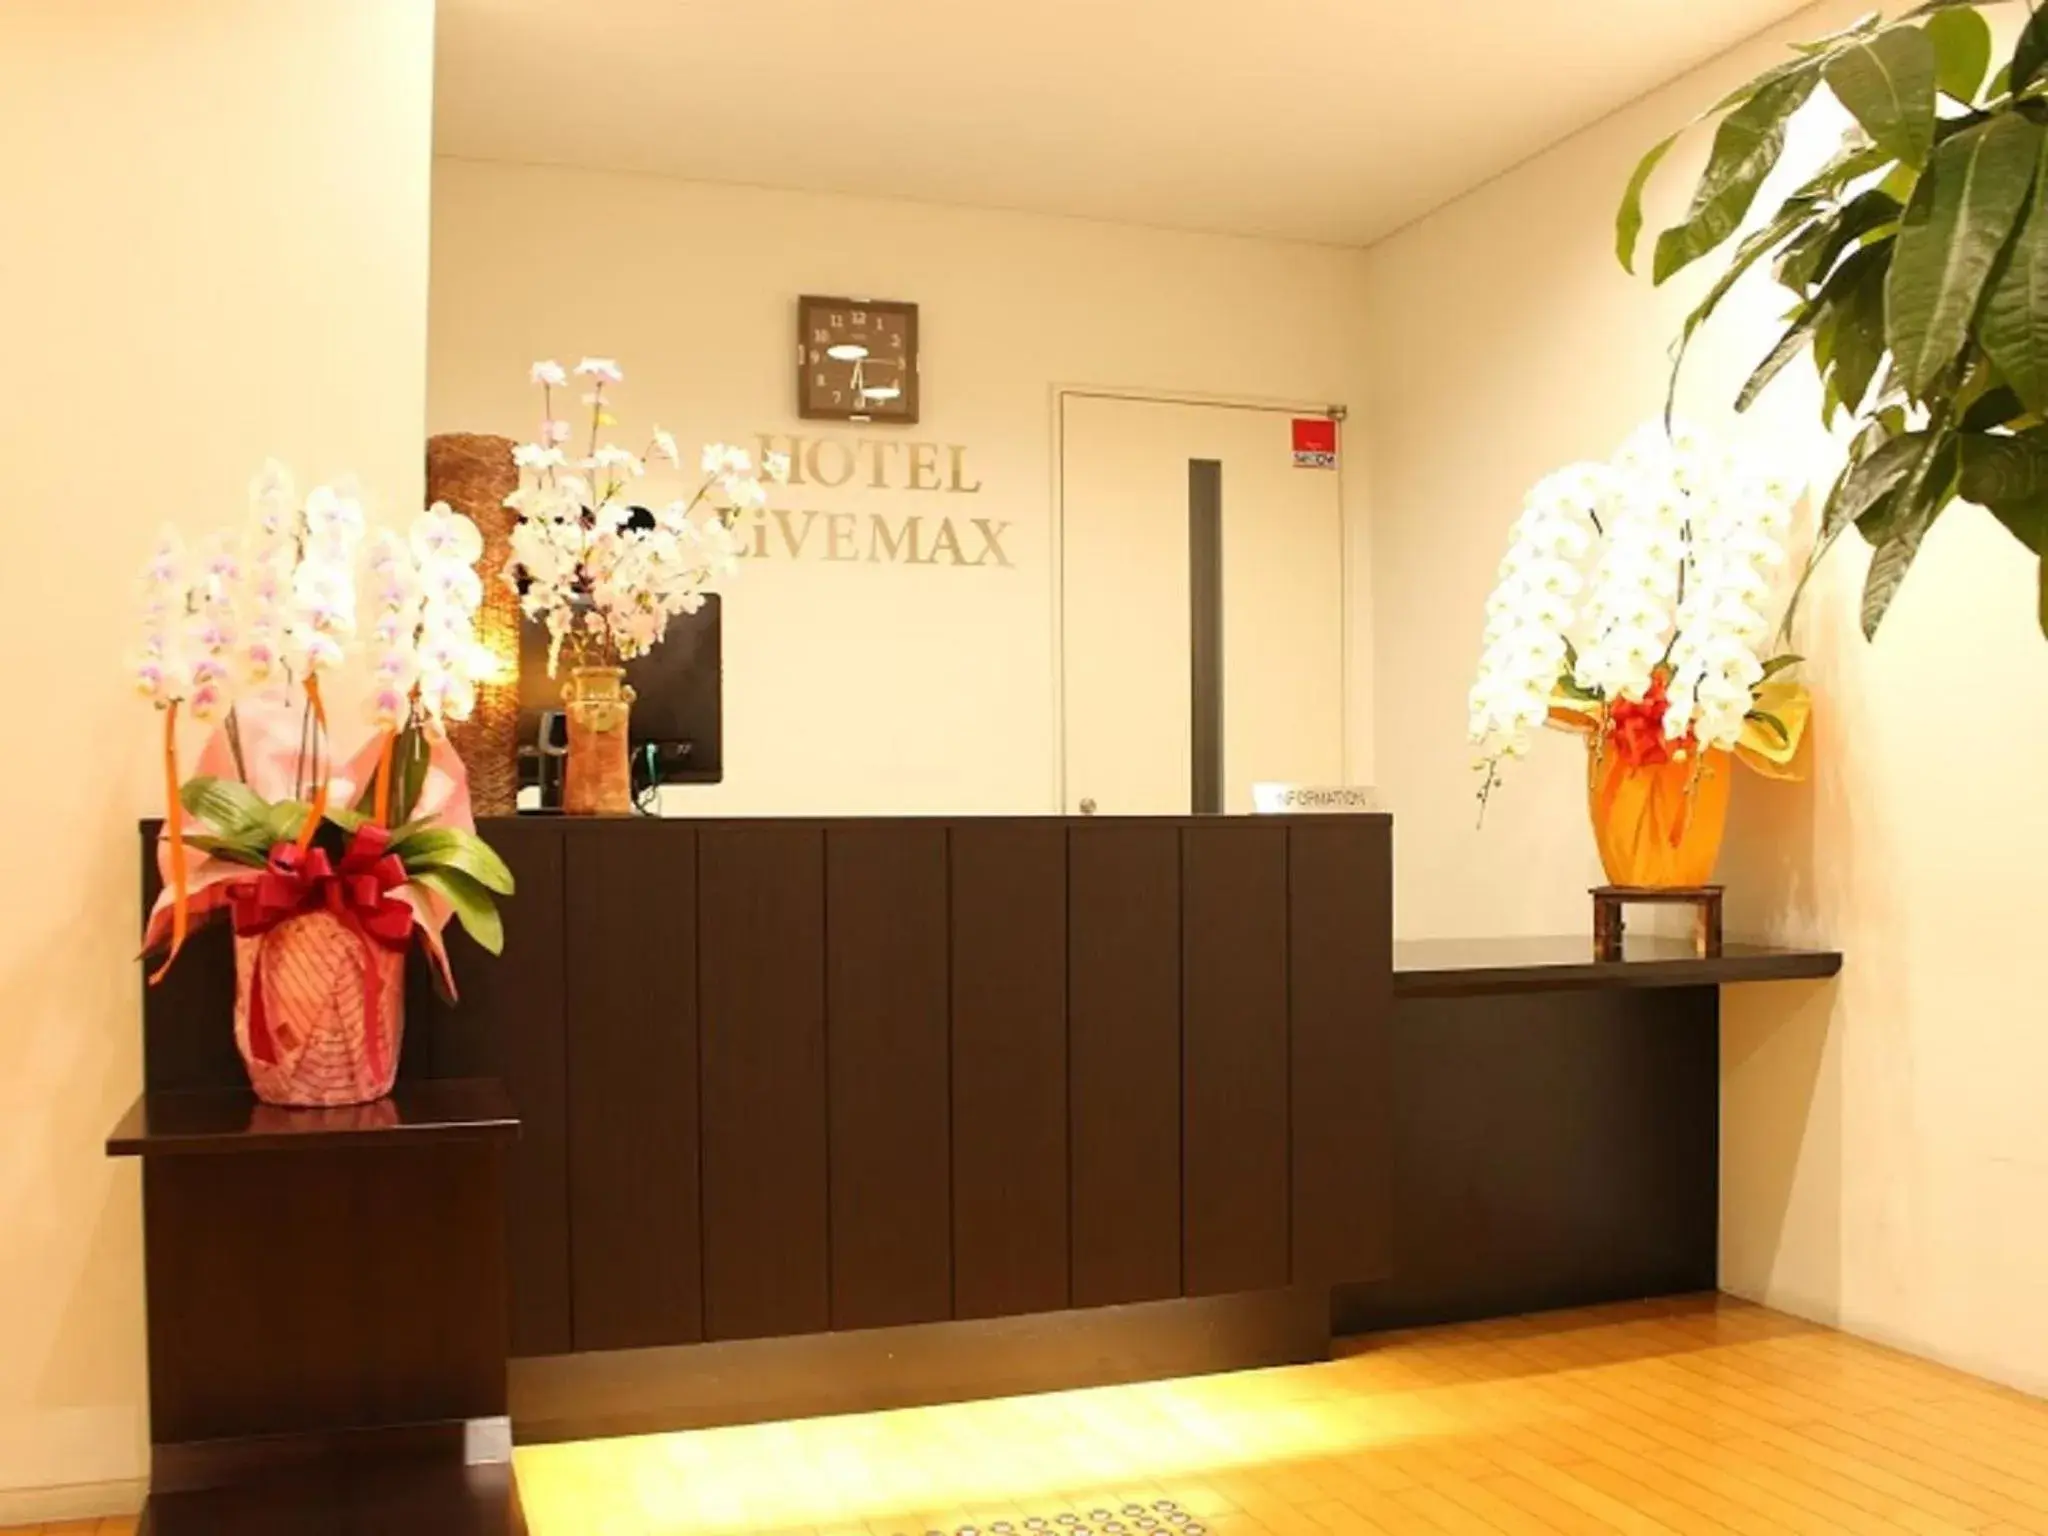 Lobby or reception, Lobby/Reception in Hotel Livemax BUDGET Chibamihama